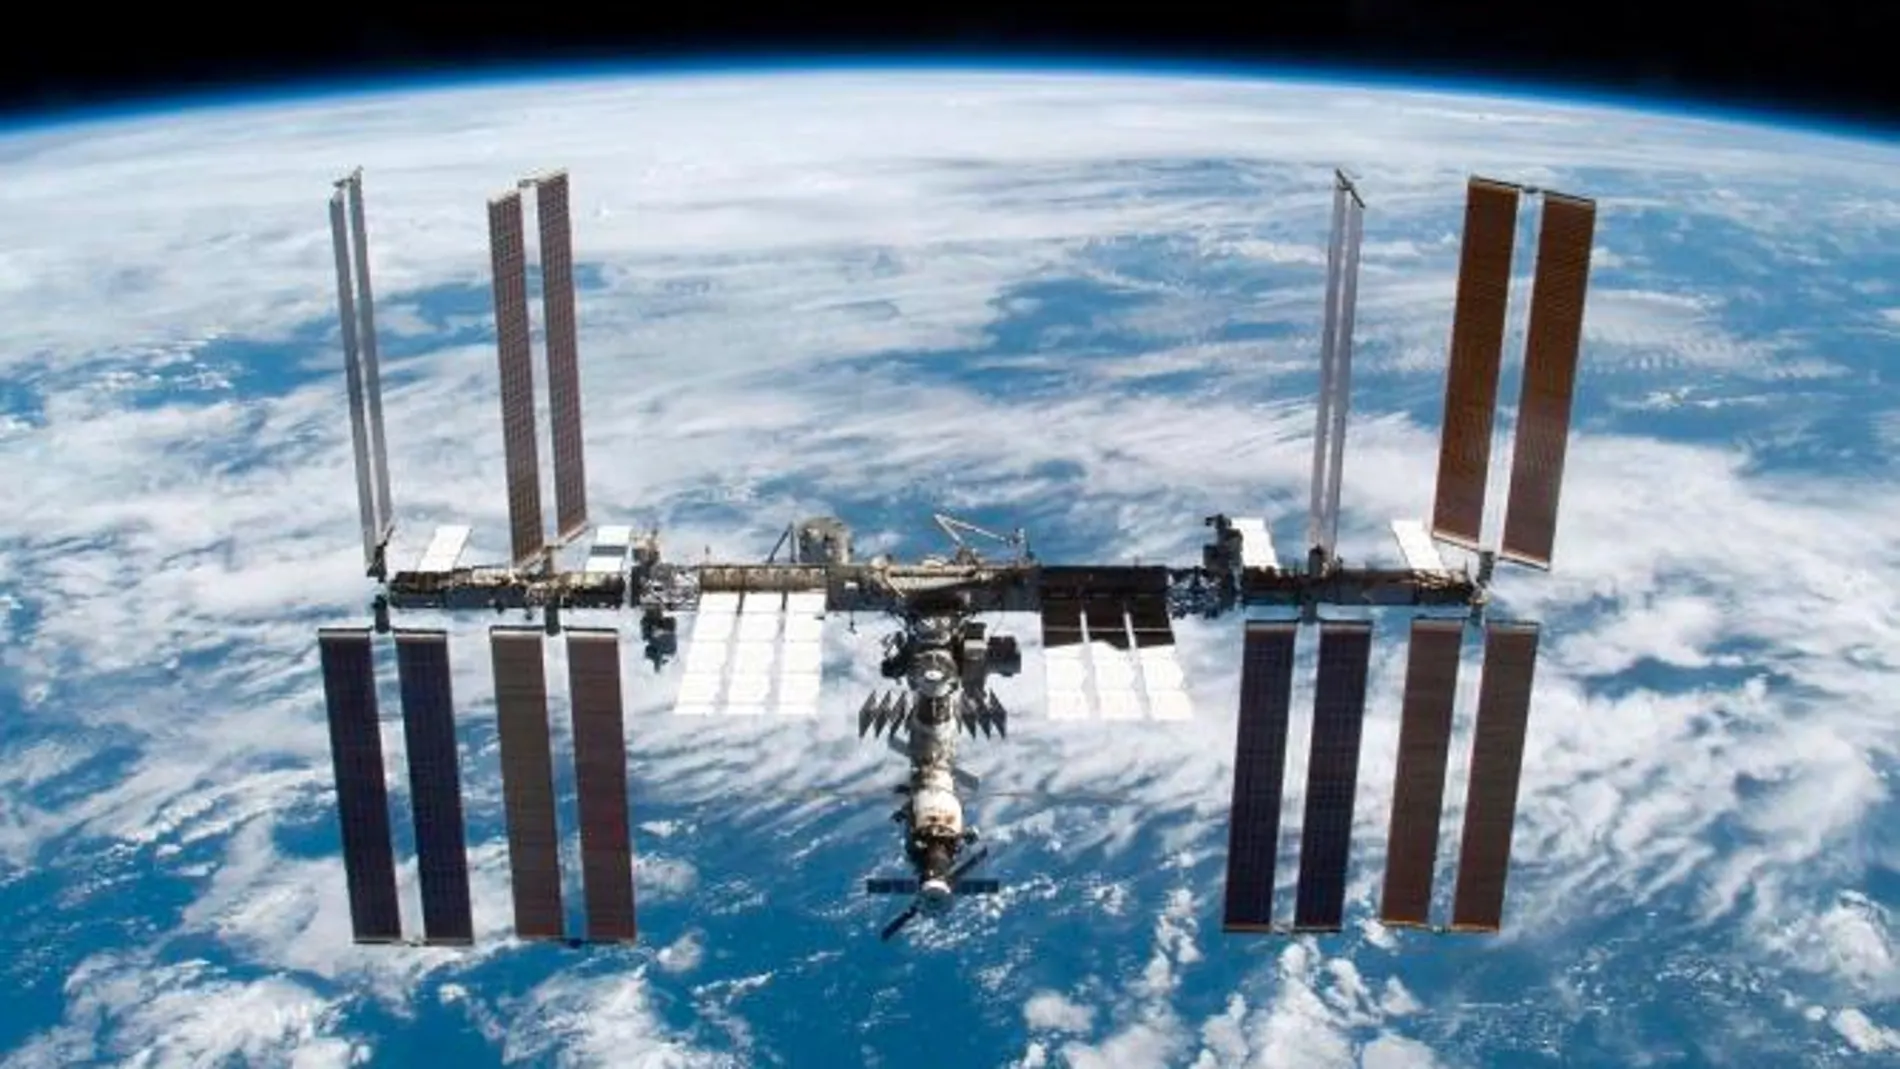 Los restos originados por la destrucción del Cosmos 1404 pudieron impactar con la Estación espacial Internacional.